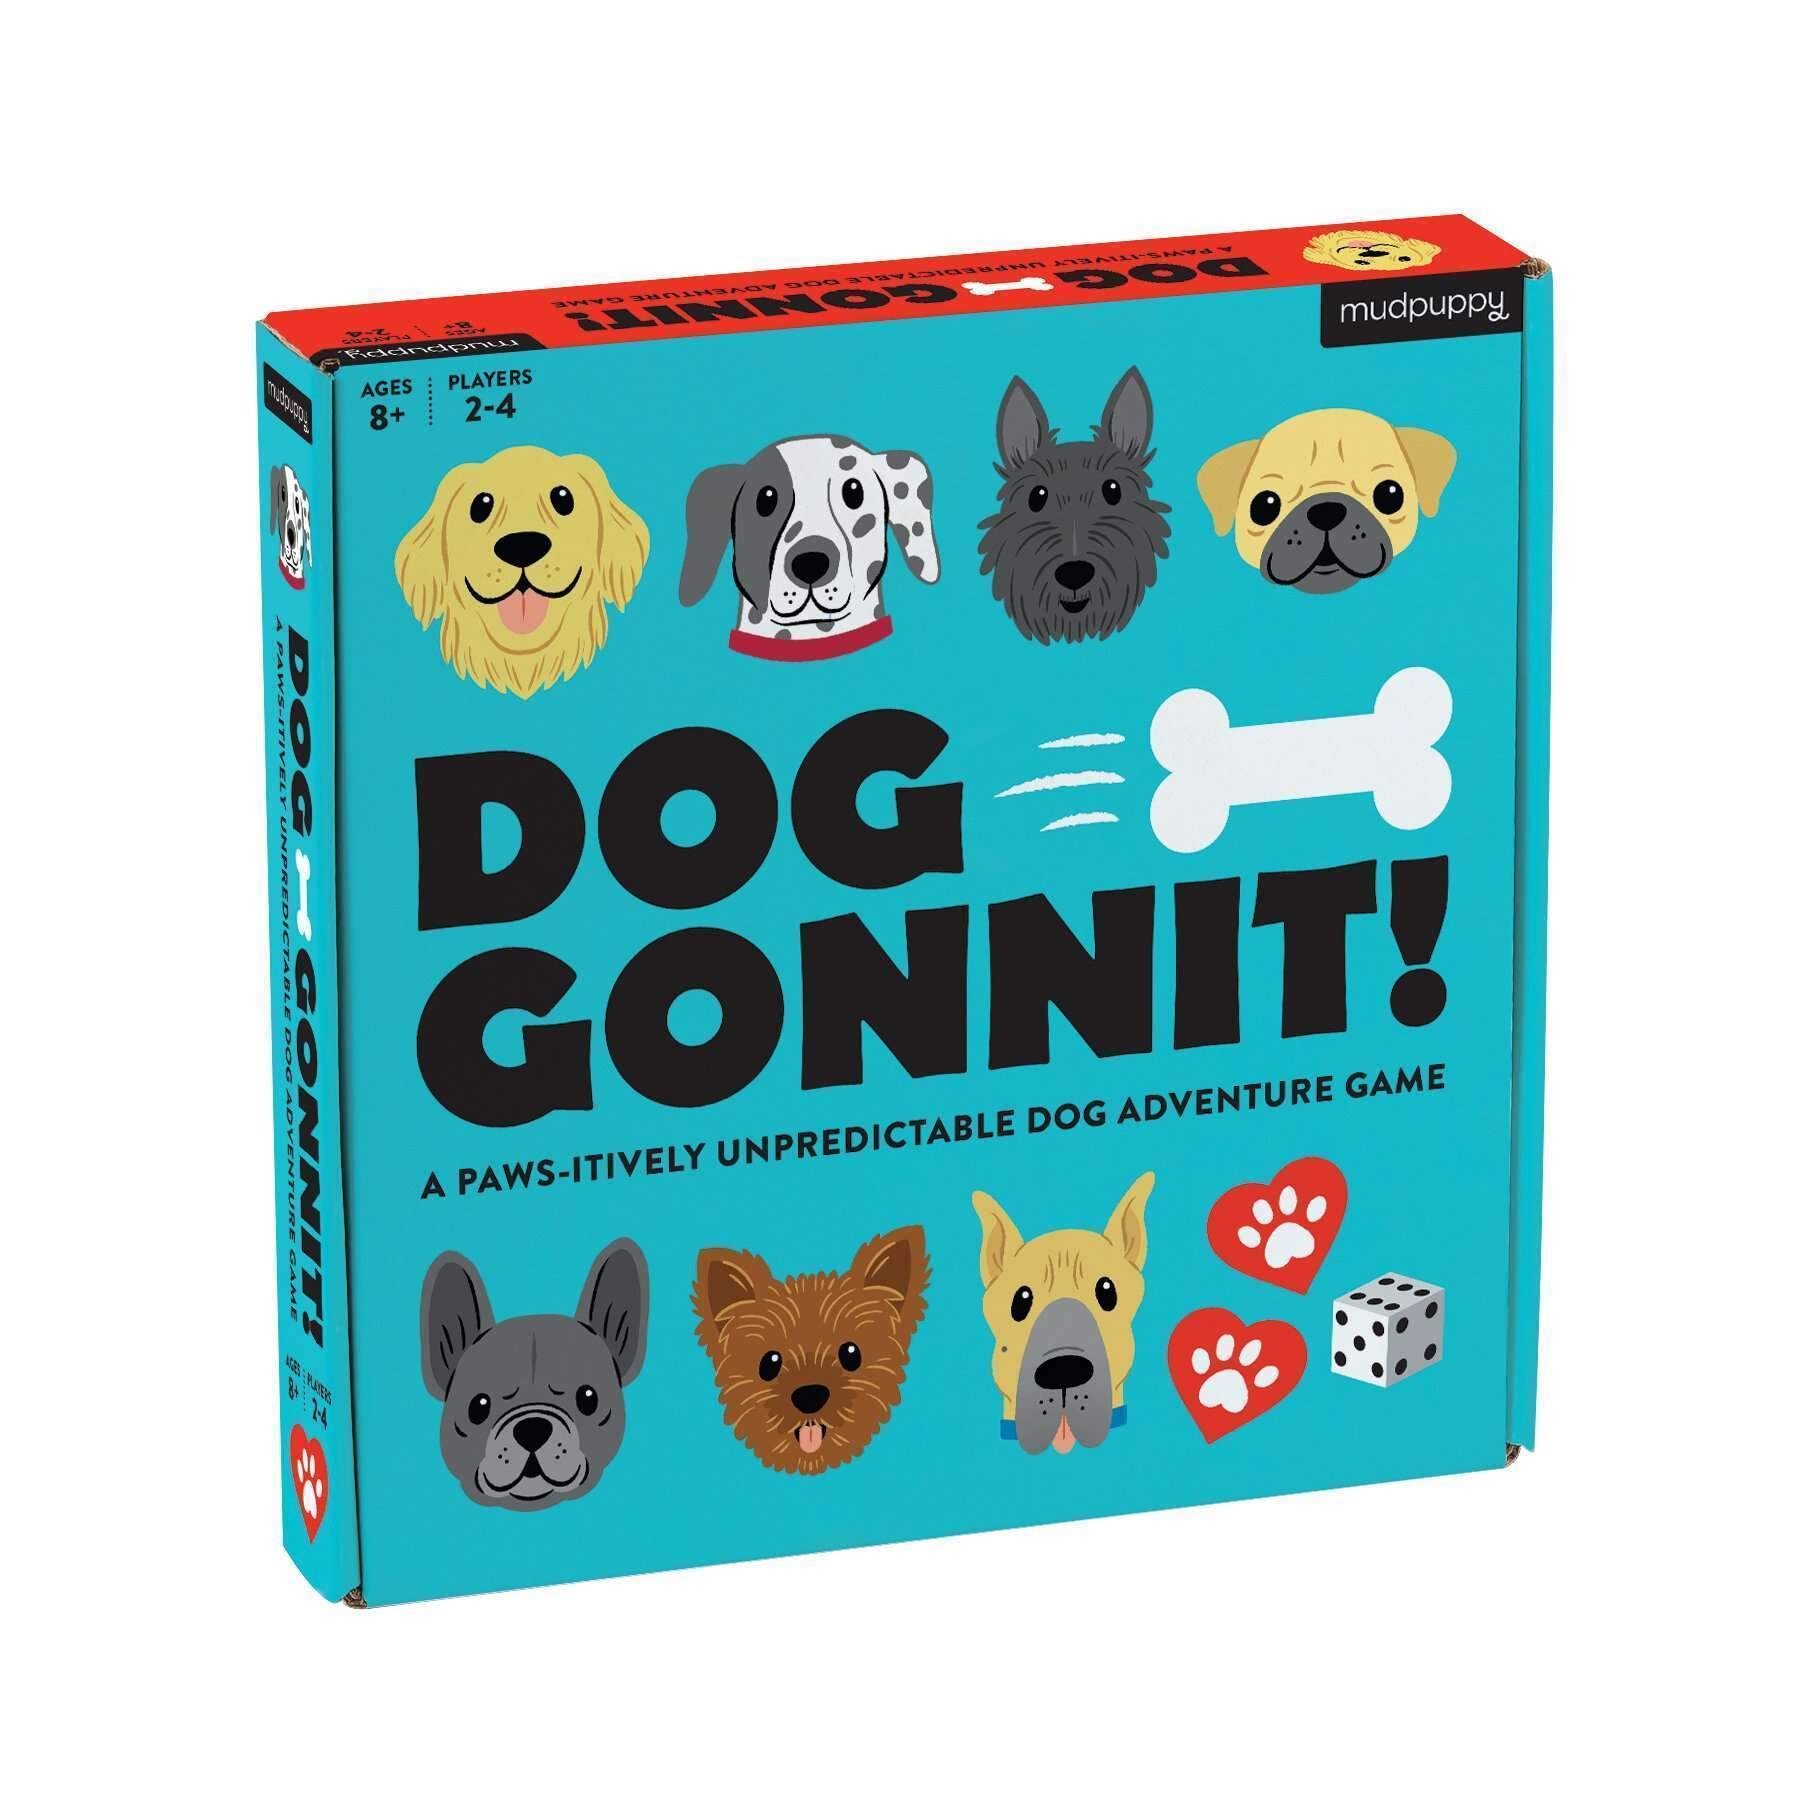 dog-gonnit-board-game-board-games-mudpuppy-756173_2400x.jpg